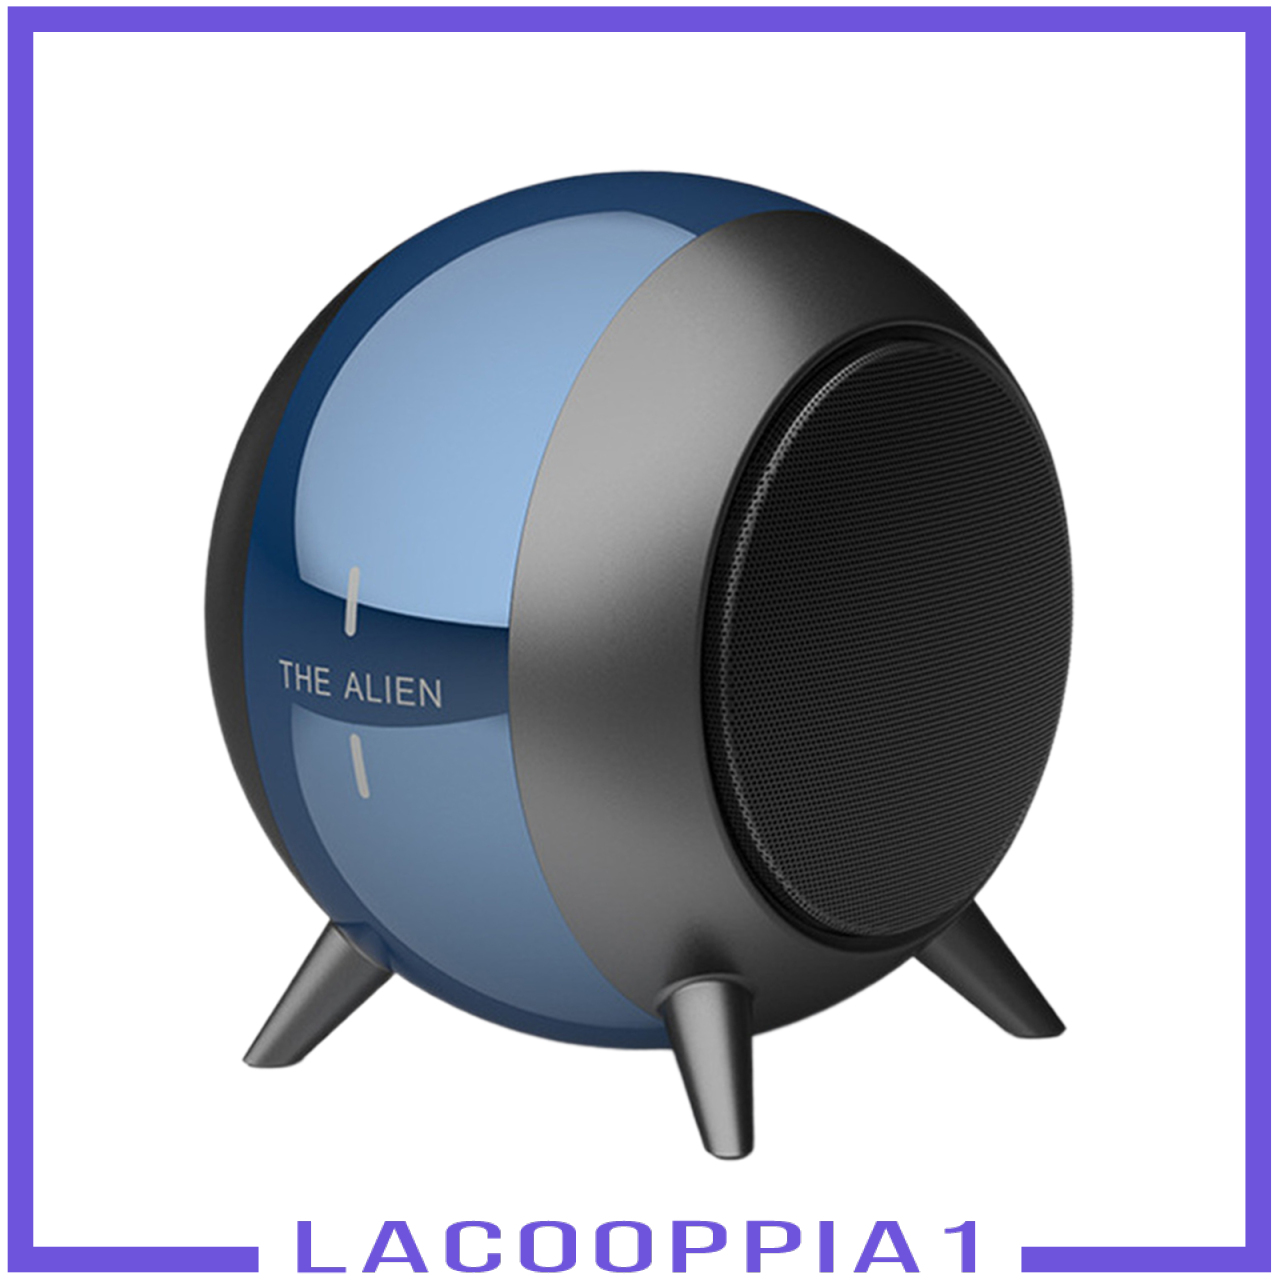 Loa Lapopopia1 Bluetooth Không Dây Âm Thanh 6h